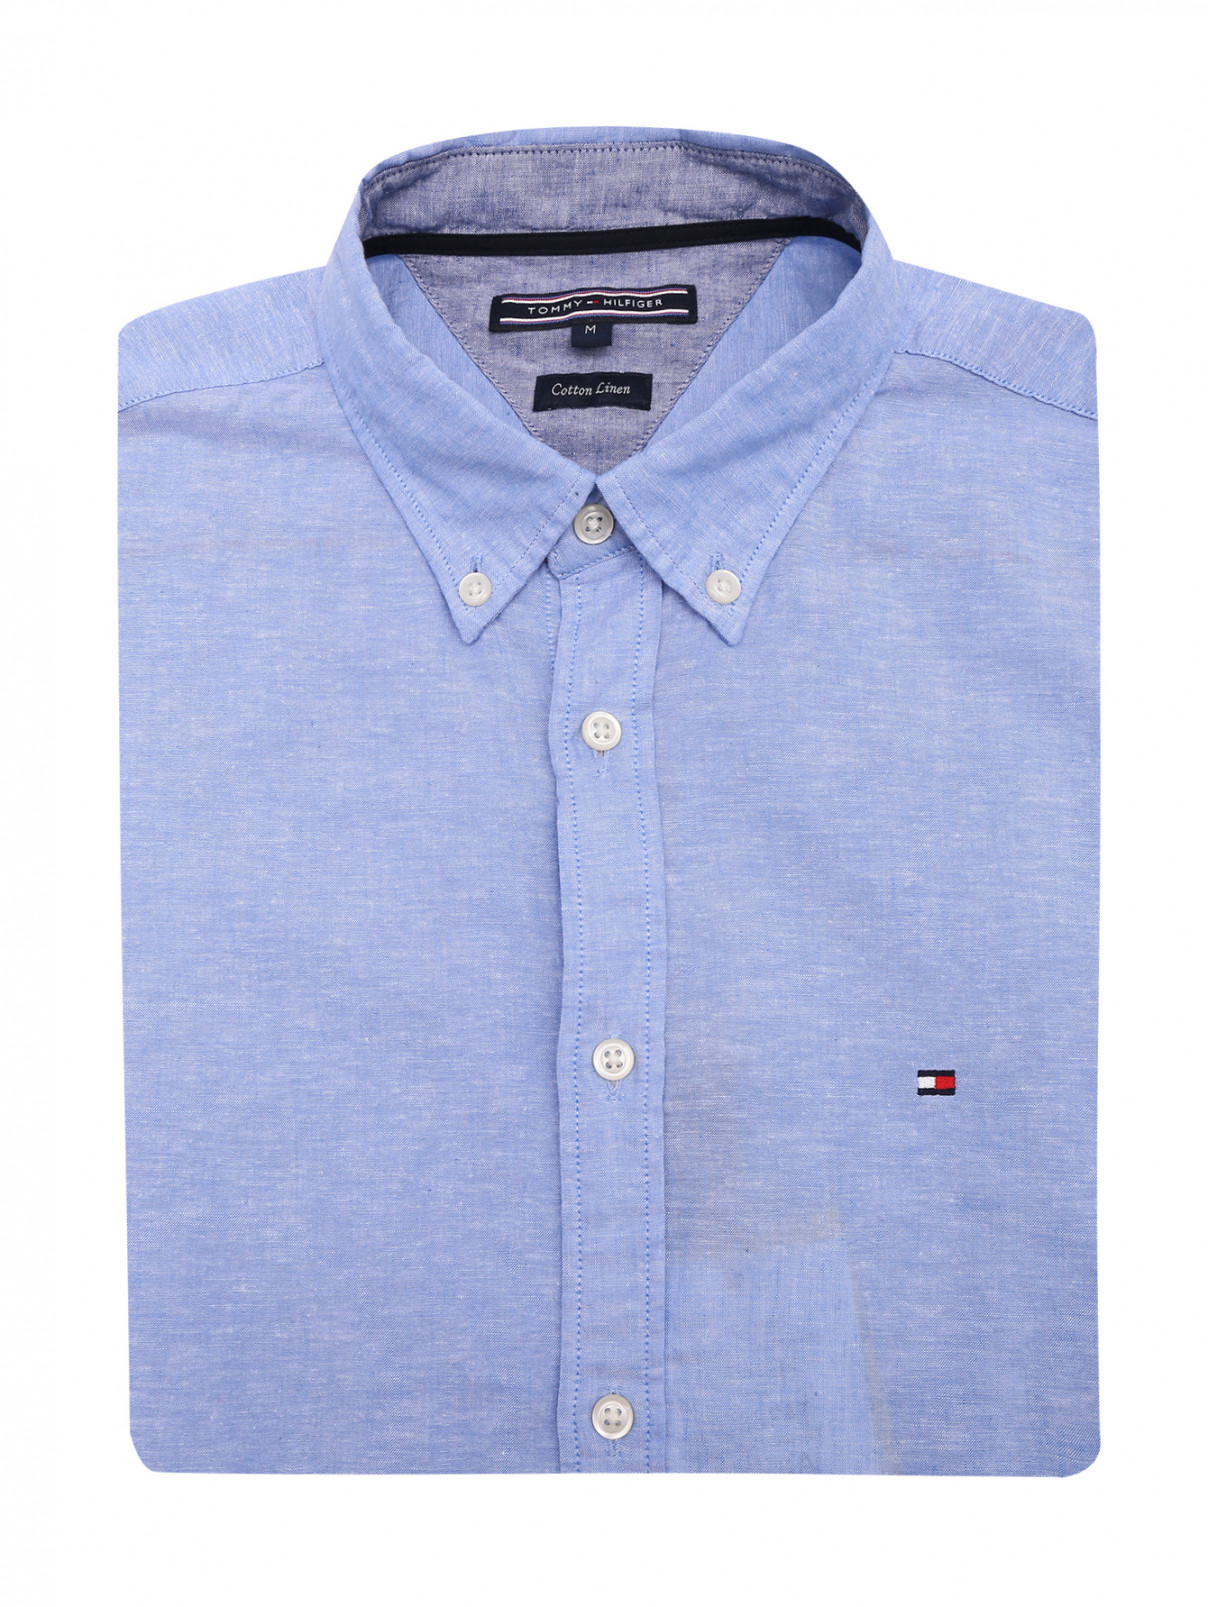 Рубашка из хлопка и льна с коротким рукавом Tommy Hilfiger  –  Общий вид  – Цвет:  Синий